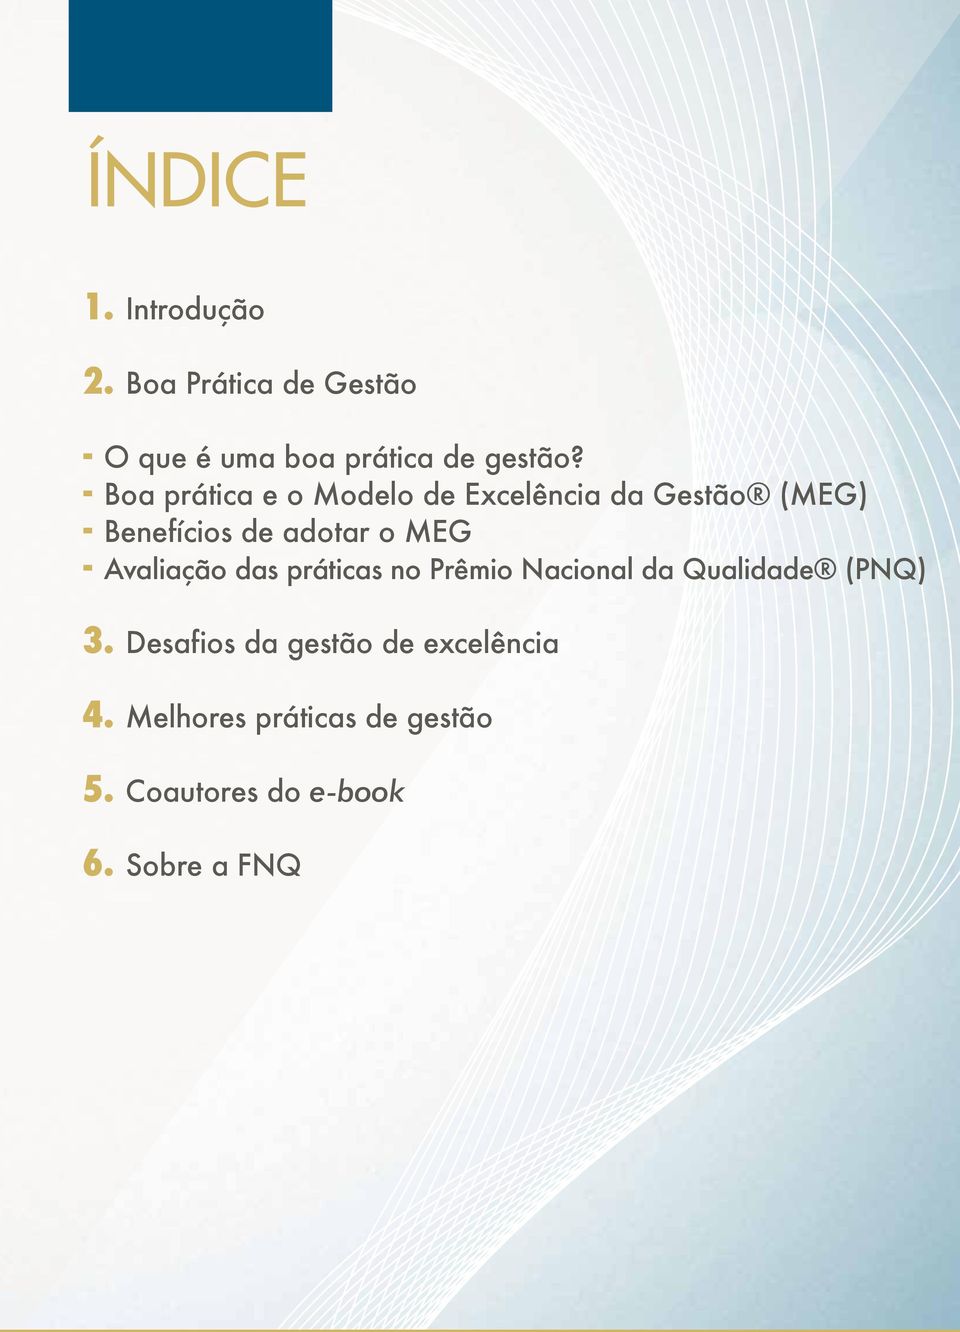 - Avaliação das práticas no Prêmio Nacional da Qualidade (PNQ) 3.